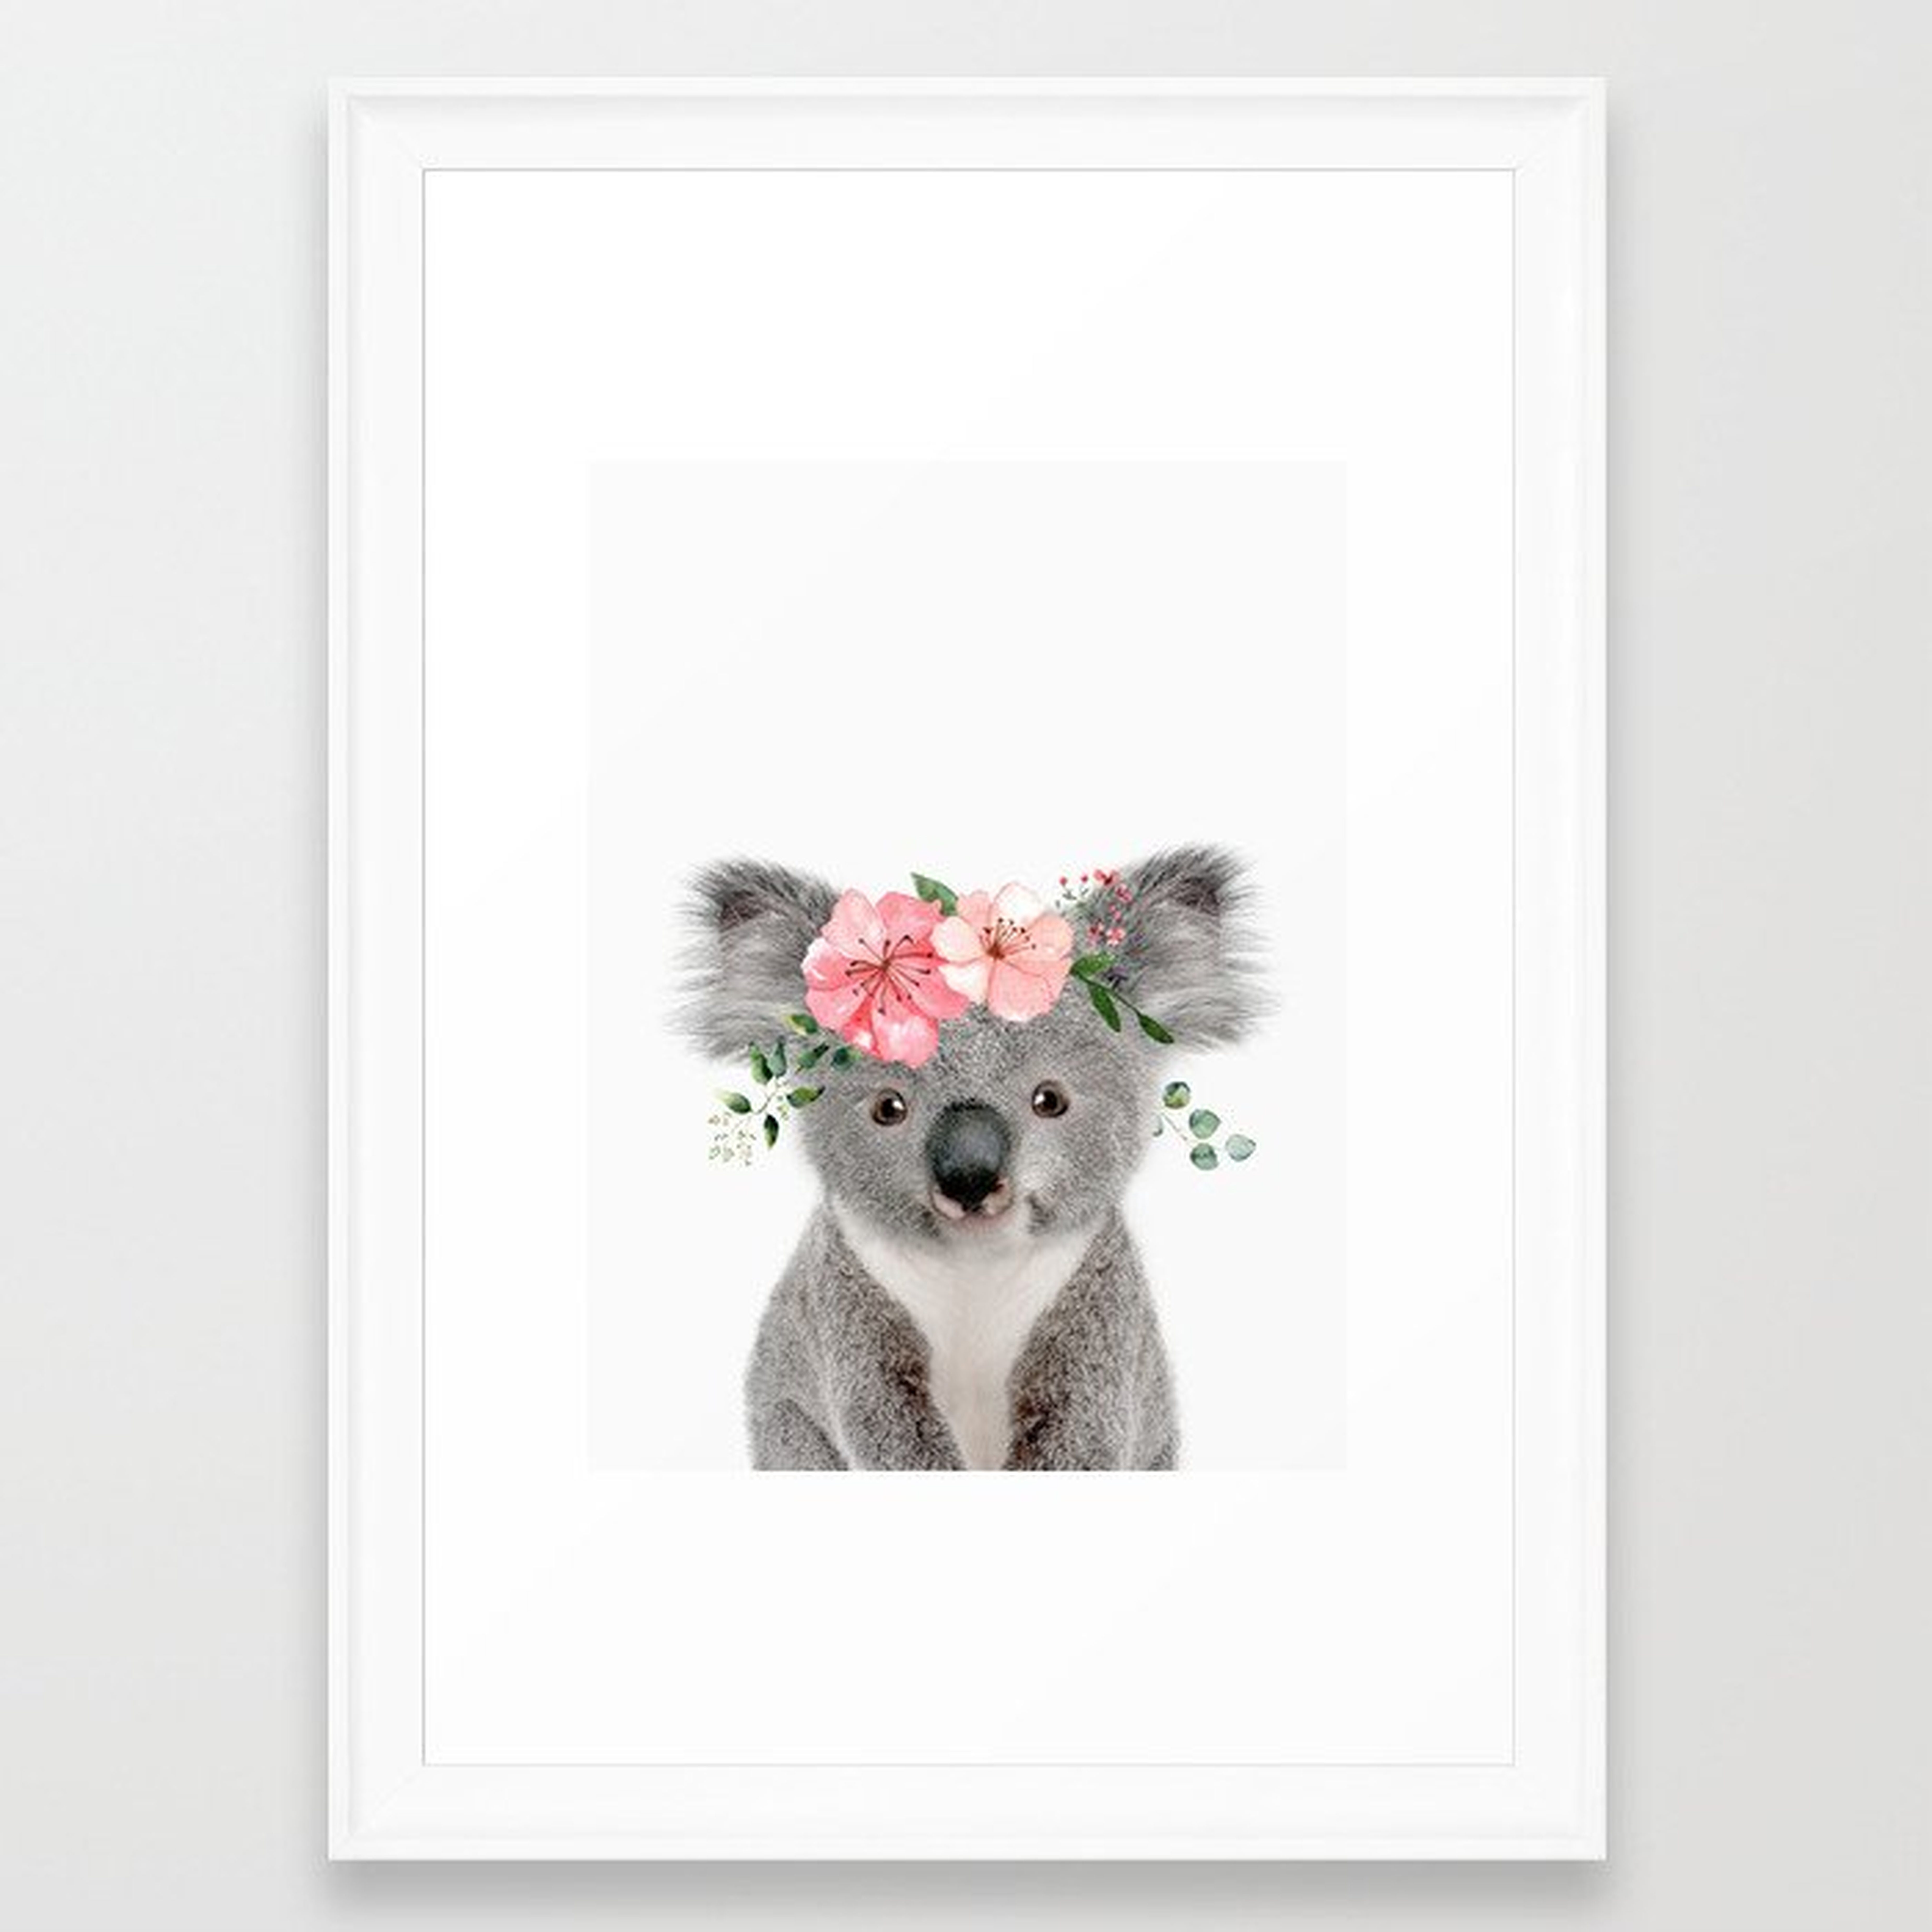 Baby Koala with Flower Crown Framed Art Print - scoop white - 15x21 - Society6